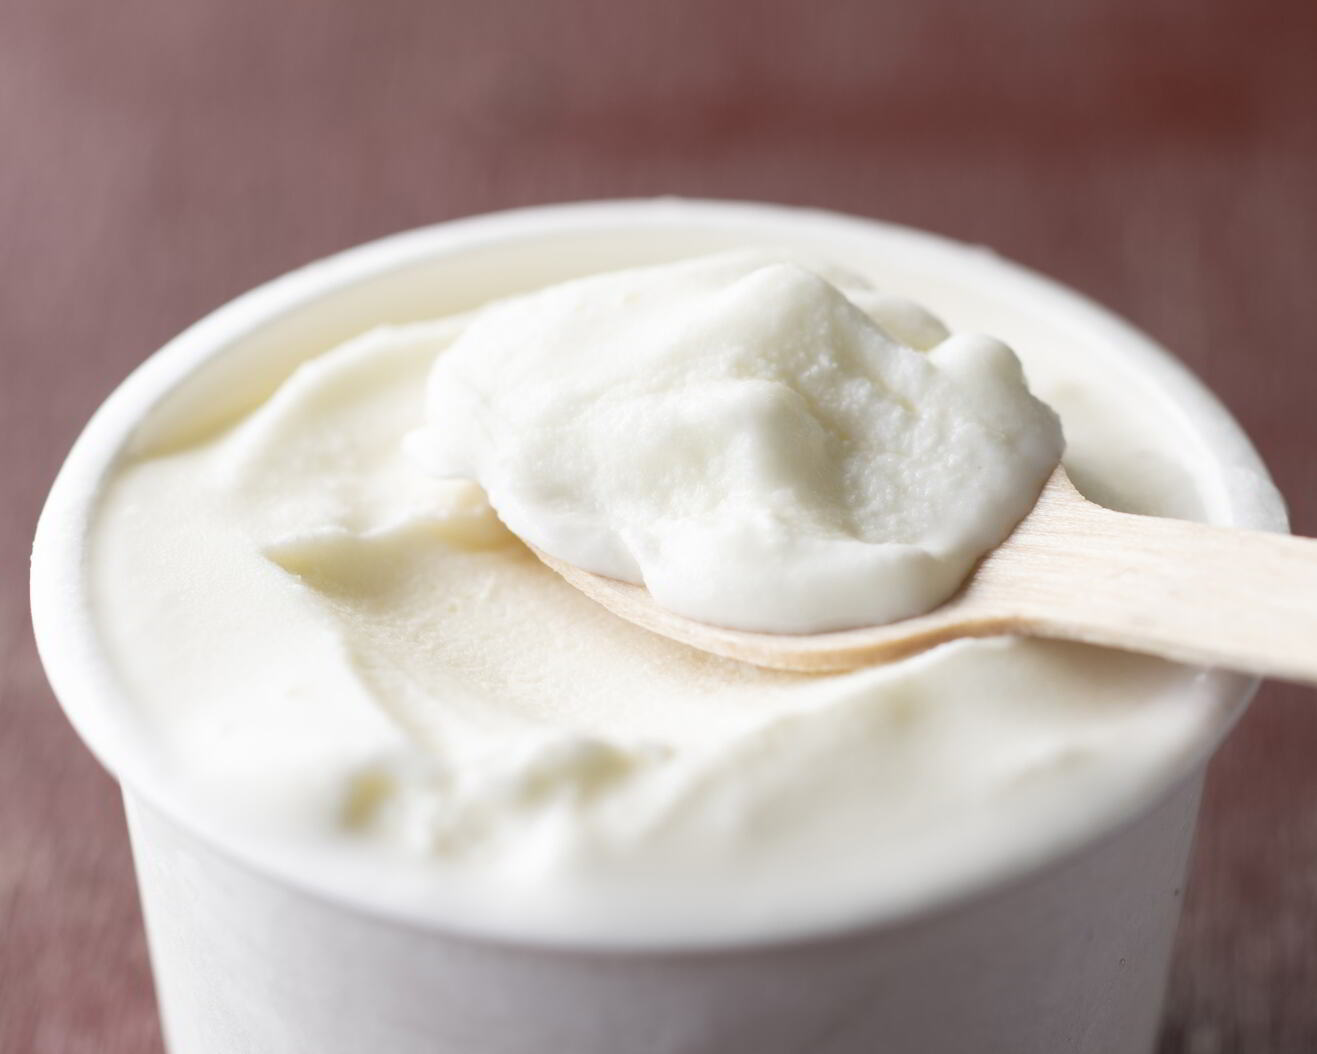 ひらかわ牧場のしぼりたて生乳で作ったアイスクリーム【2Lパック・フレッシュミルク】